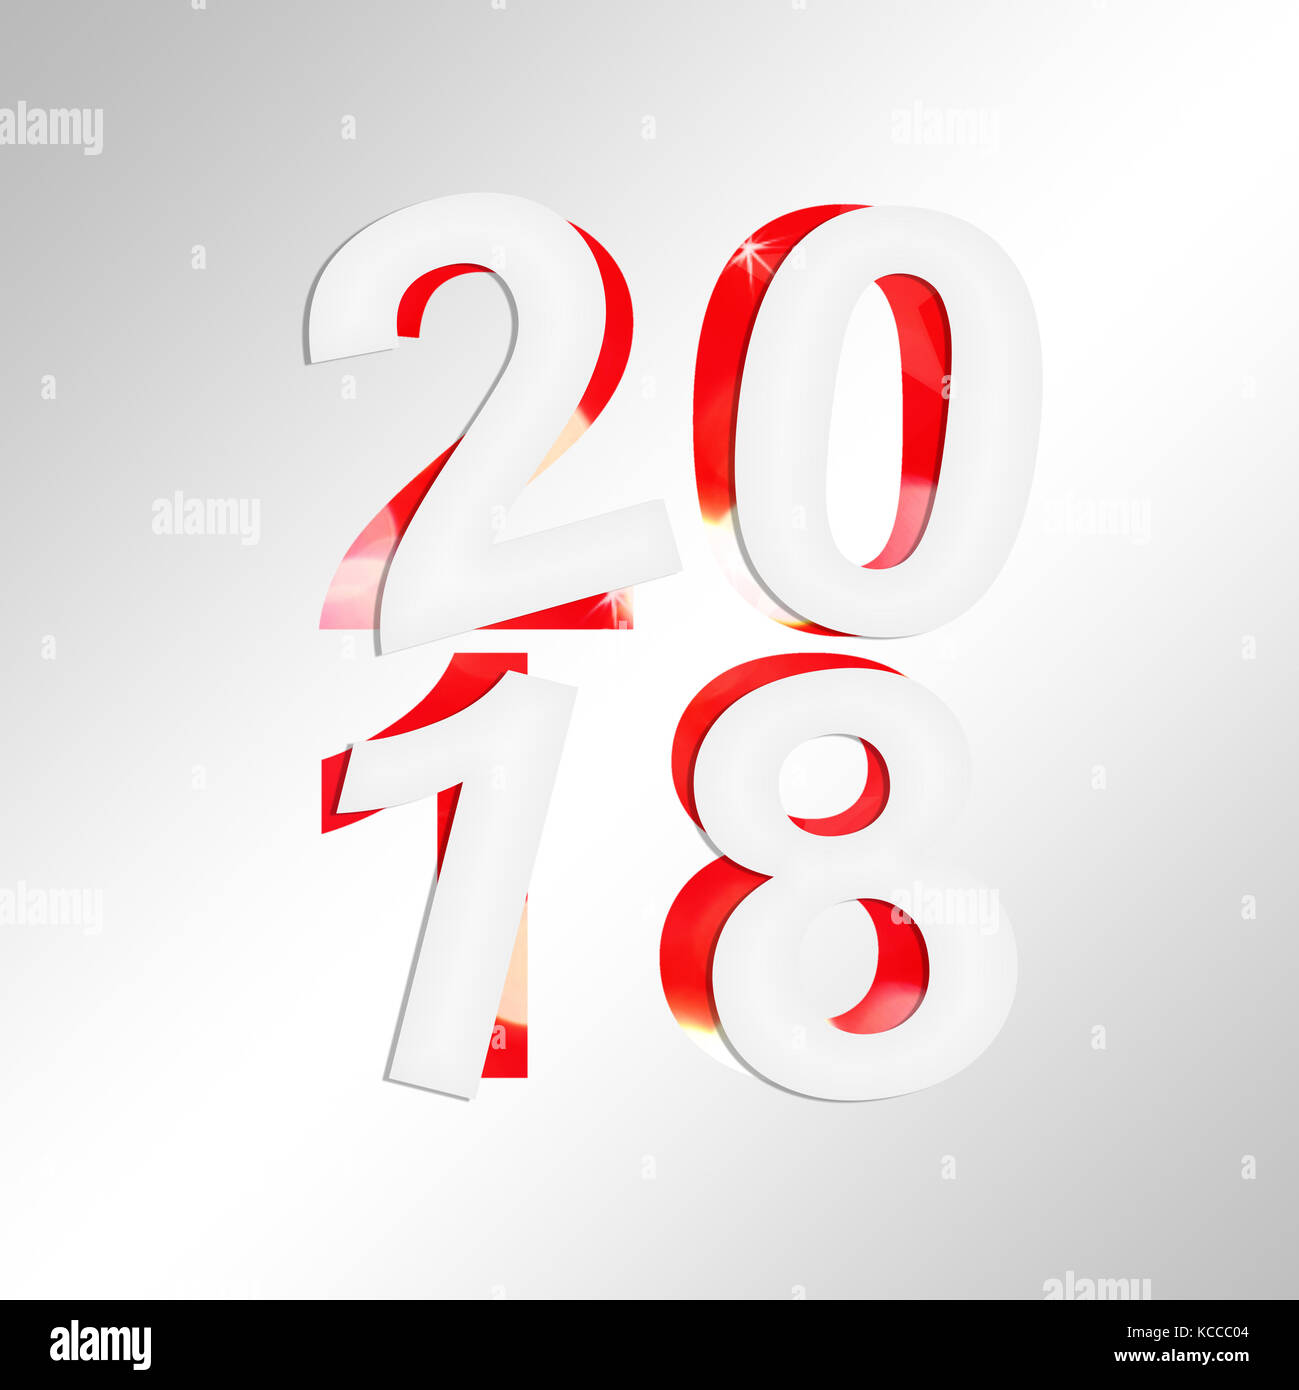 2018 square carte de souhaits avec du papier coupé et fond brillant Banque D'Images